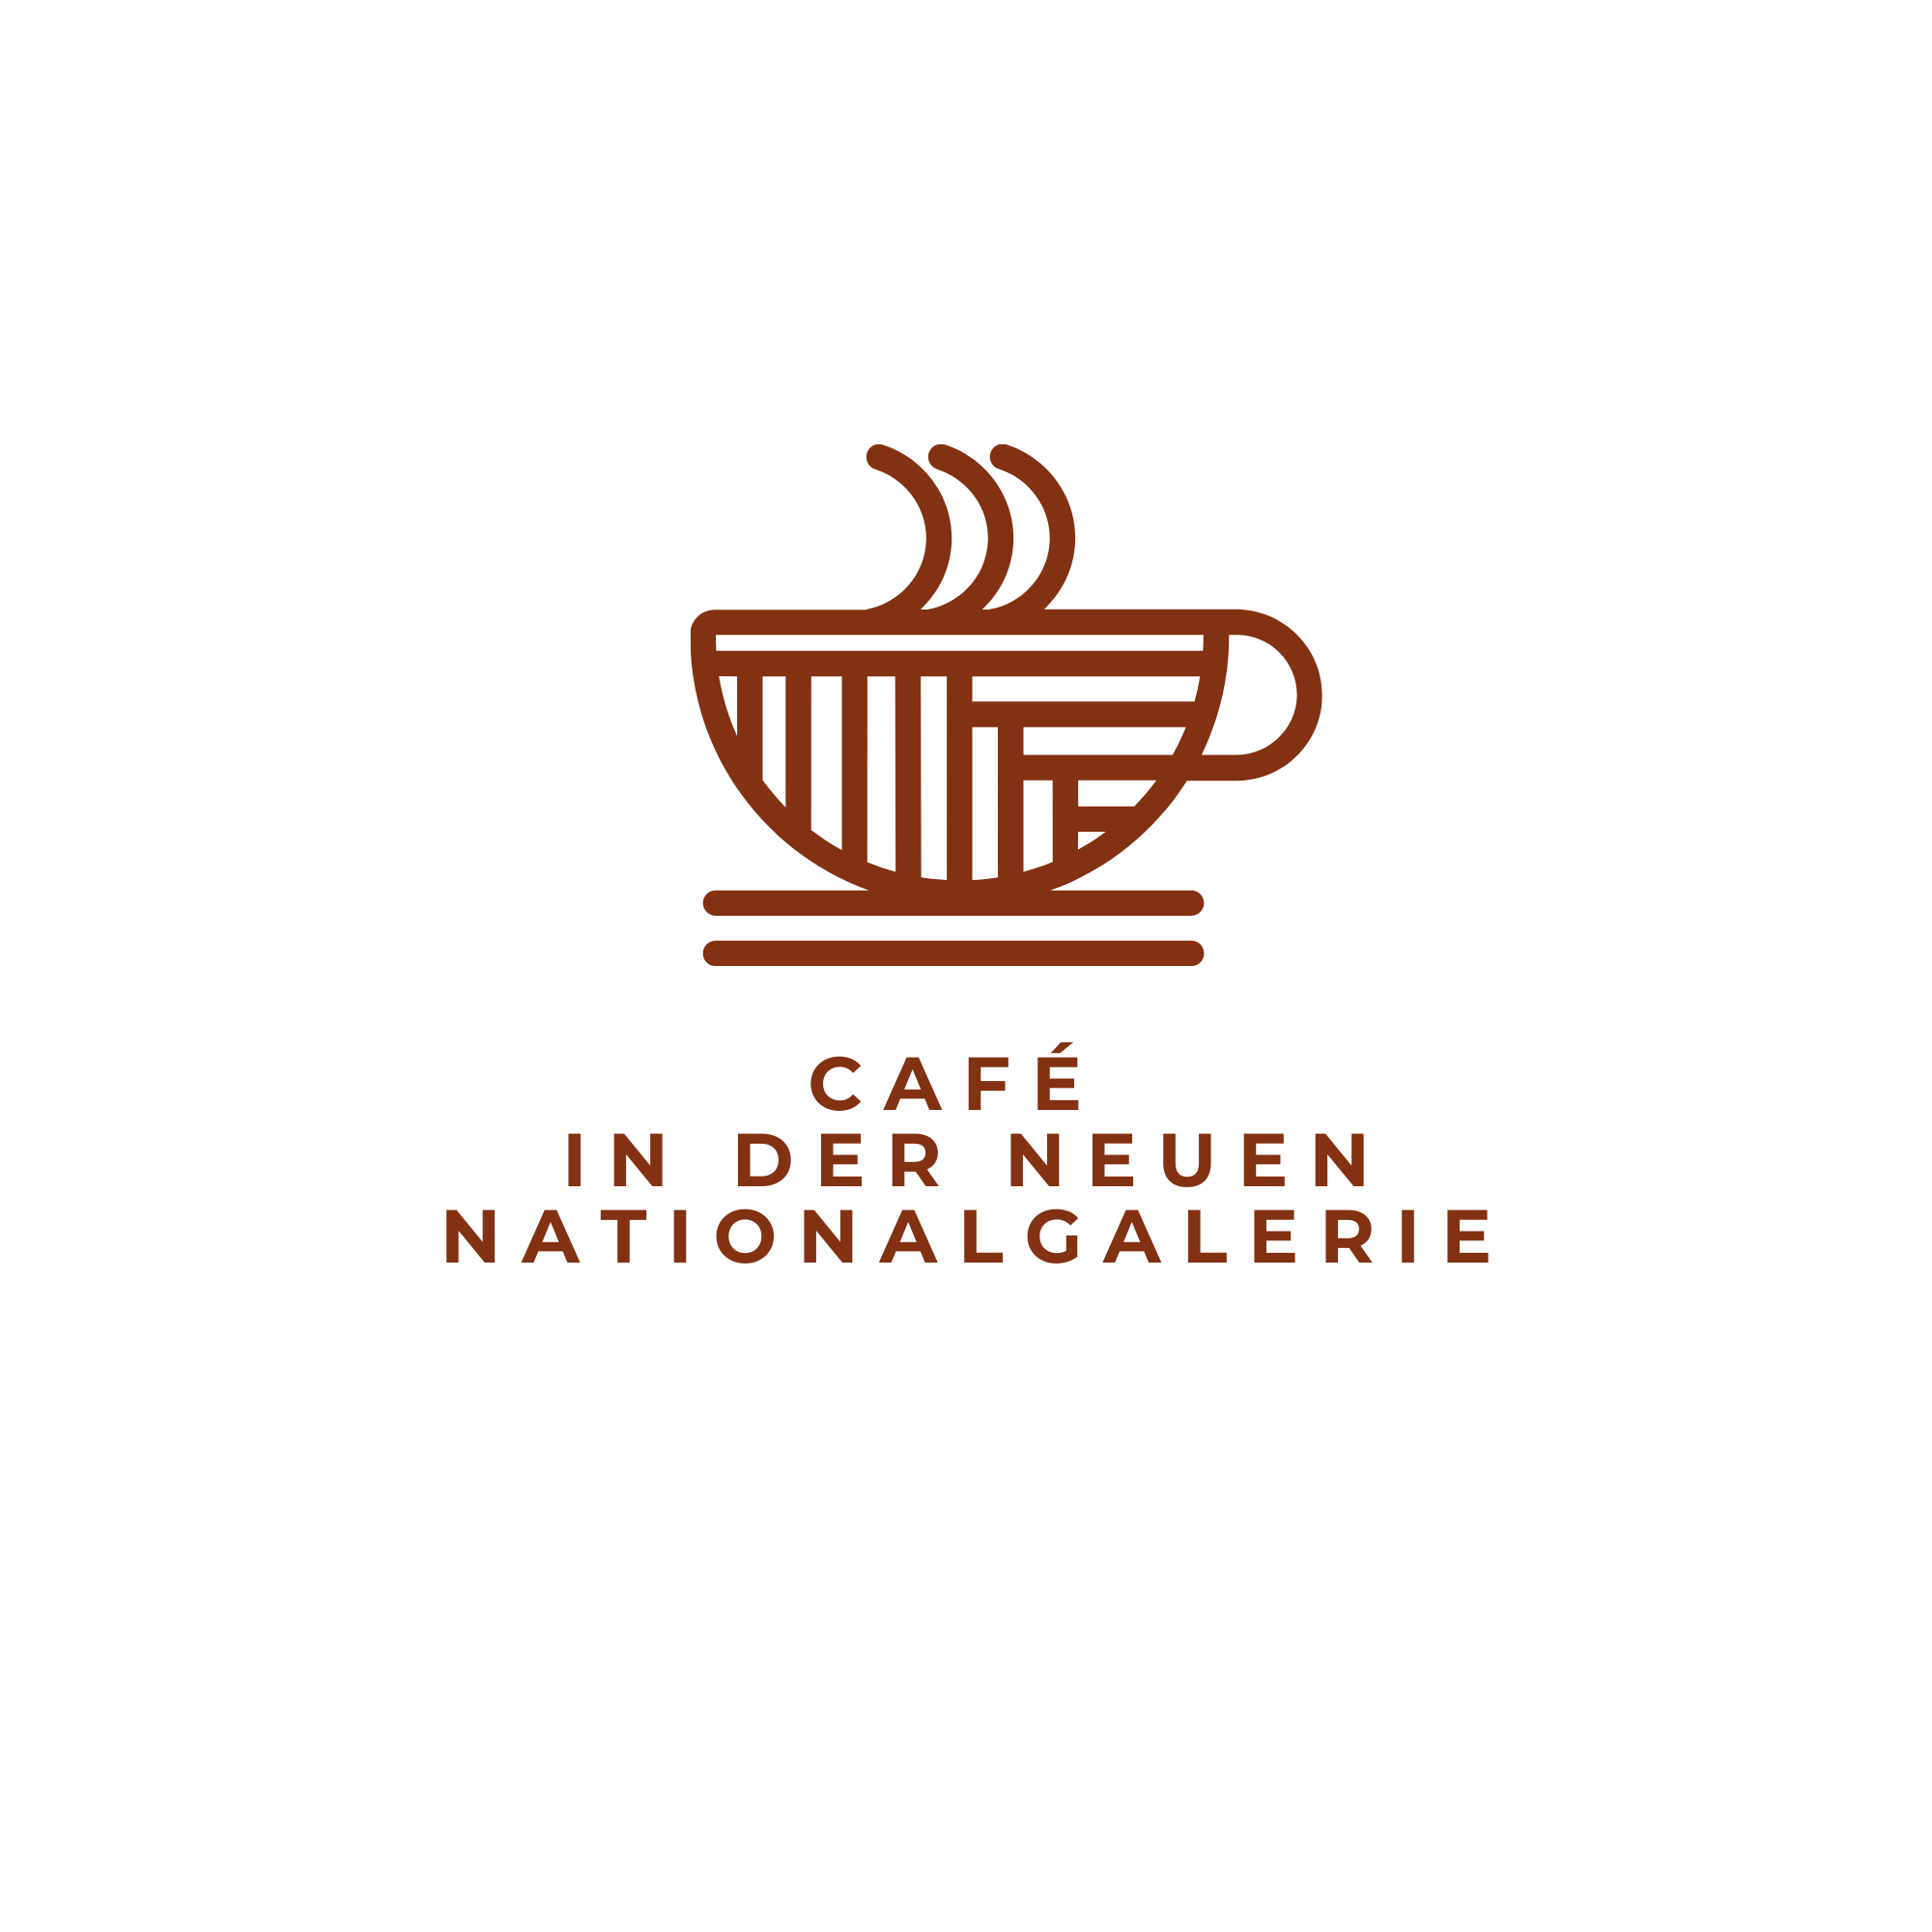 Café in der neuen Nationalgallerie